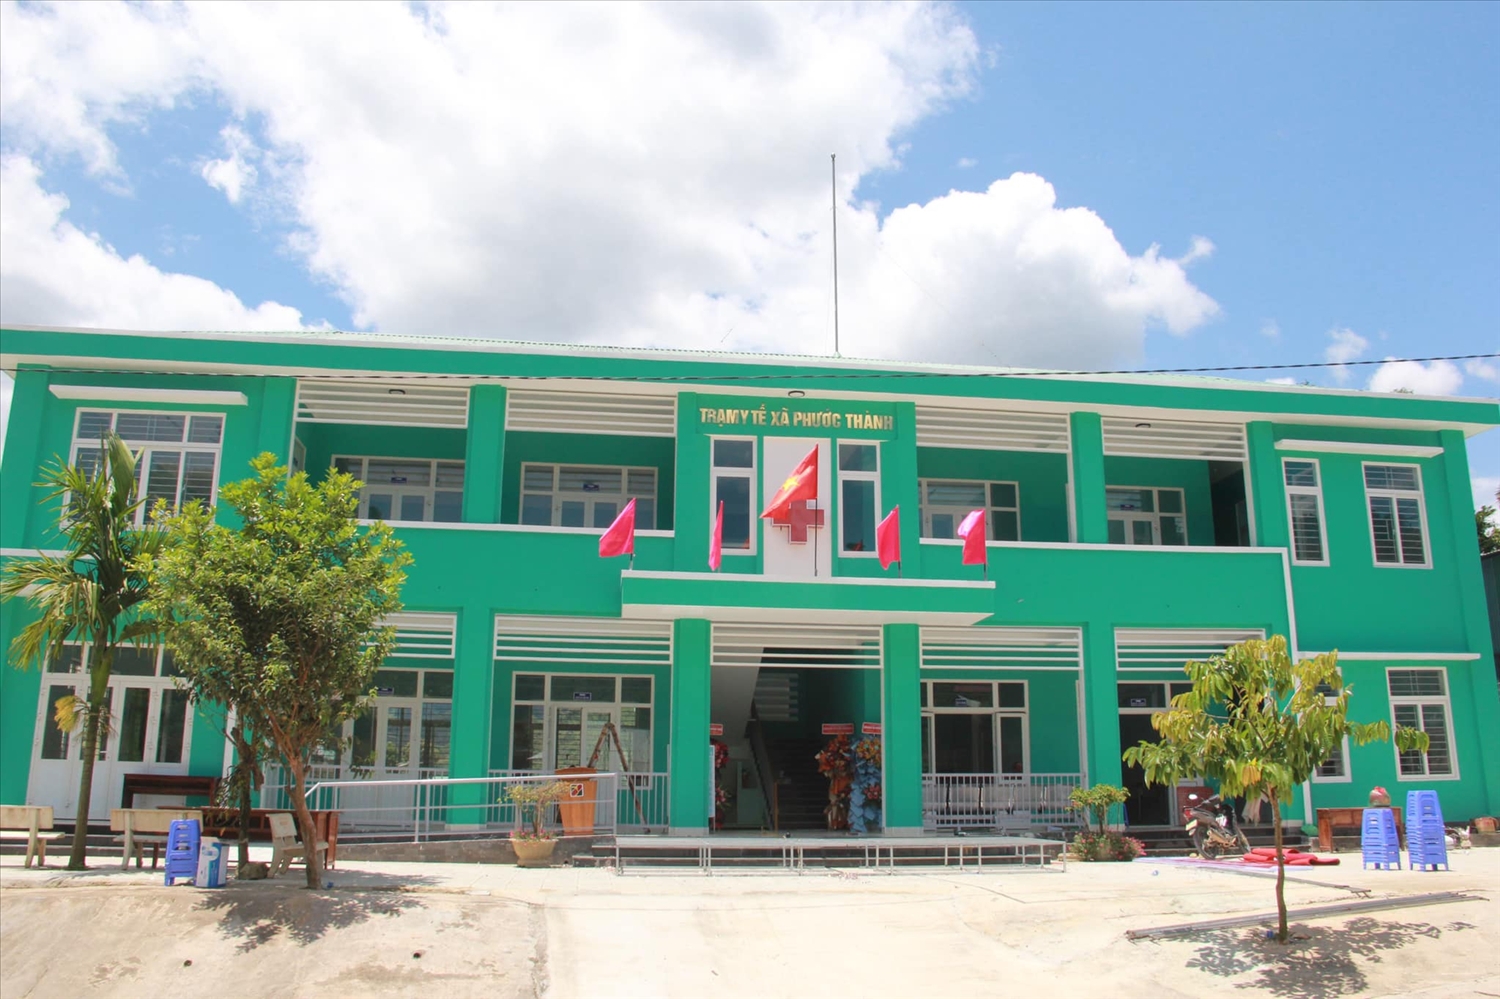 Trạm y tế xã Phước Thành gồm các hạng mục: Khối nhà trạm 2 tầng, 12 phòng và khối nhà công vụ 1 tầng, 4 phòng với tổng diện tích xây dựng gần 600m2